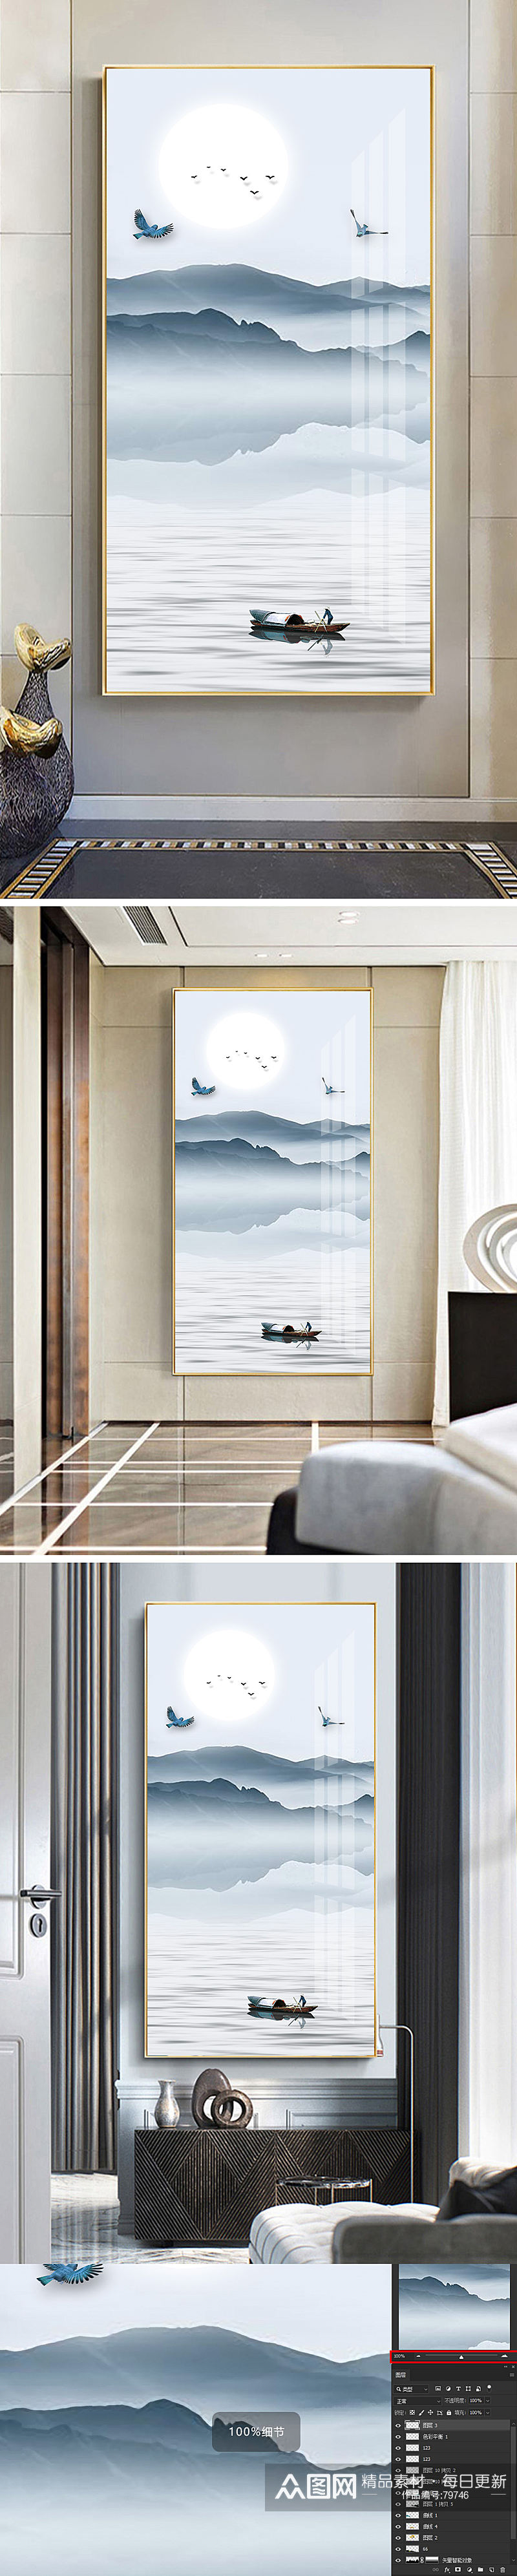 中式山水画意境装饰画素材